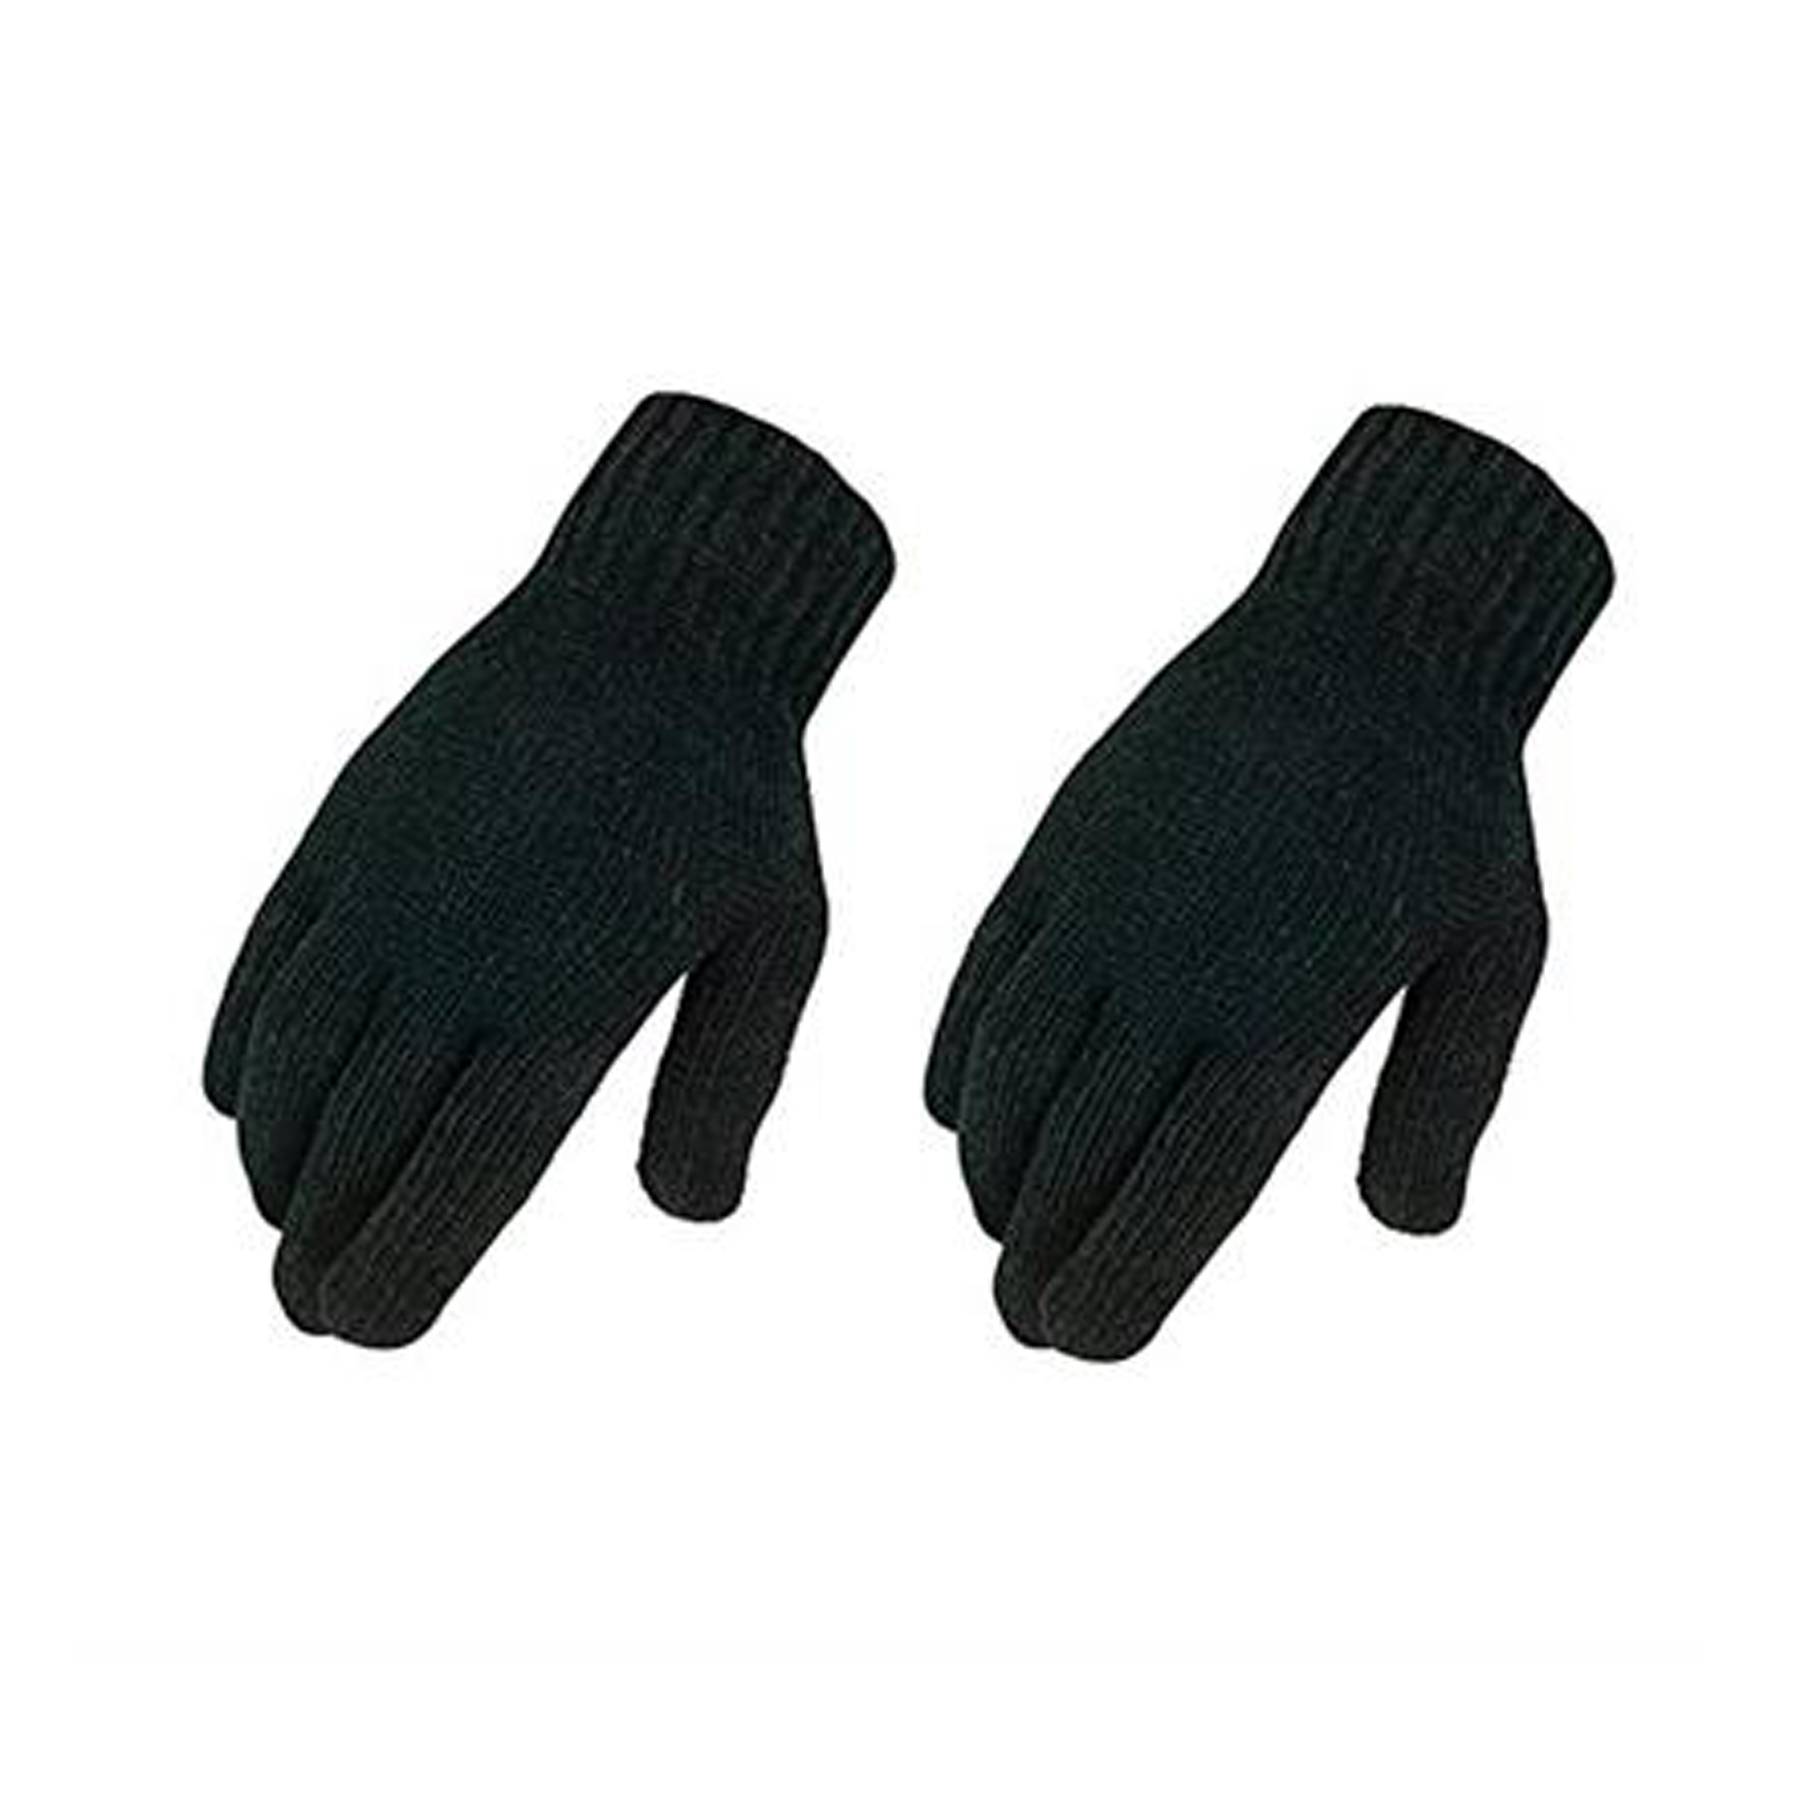 Magic Knit Stretch Glove